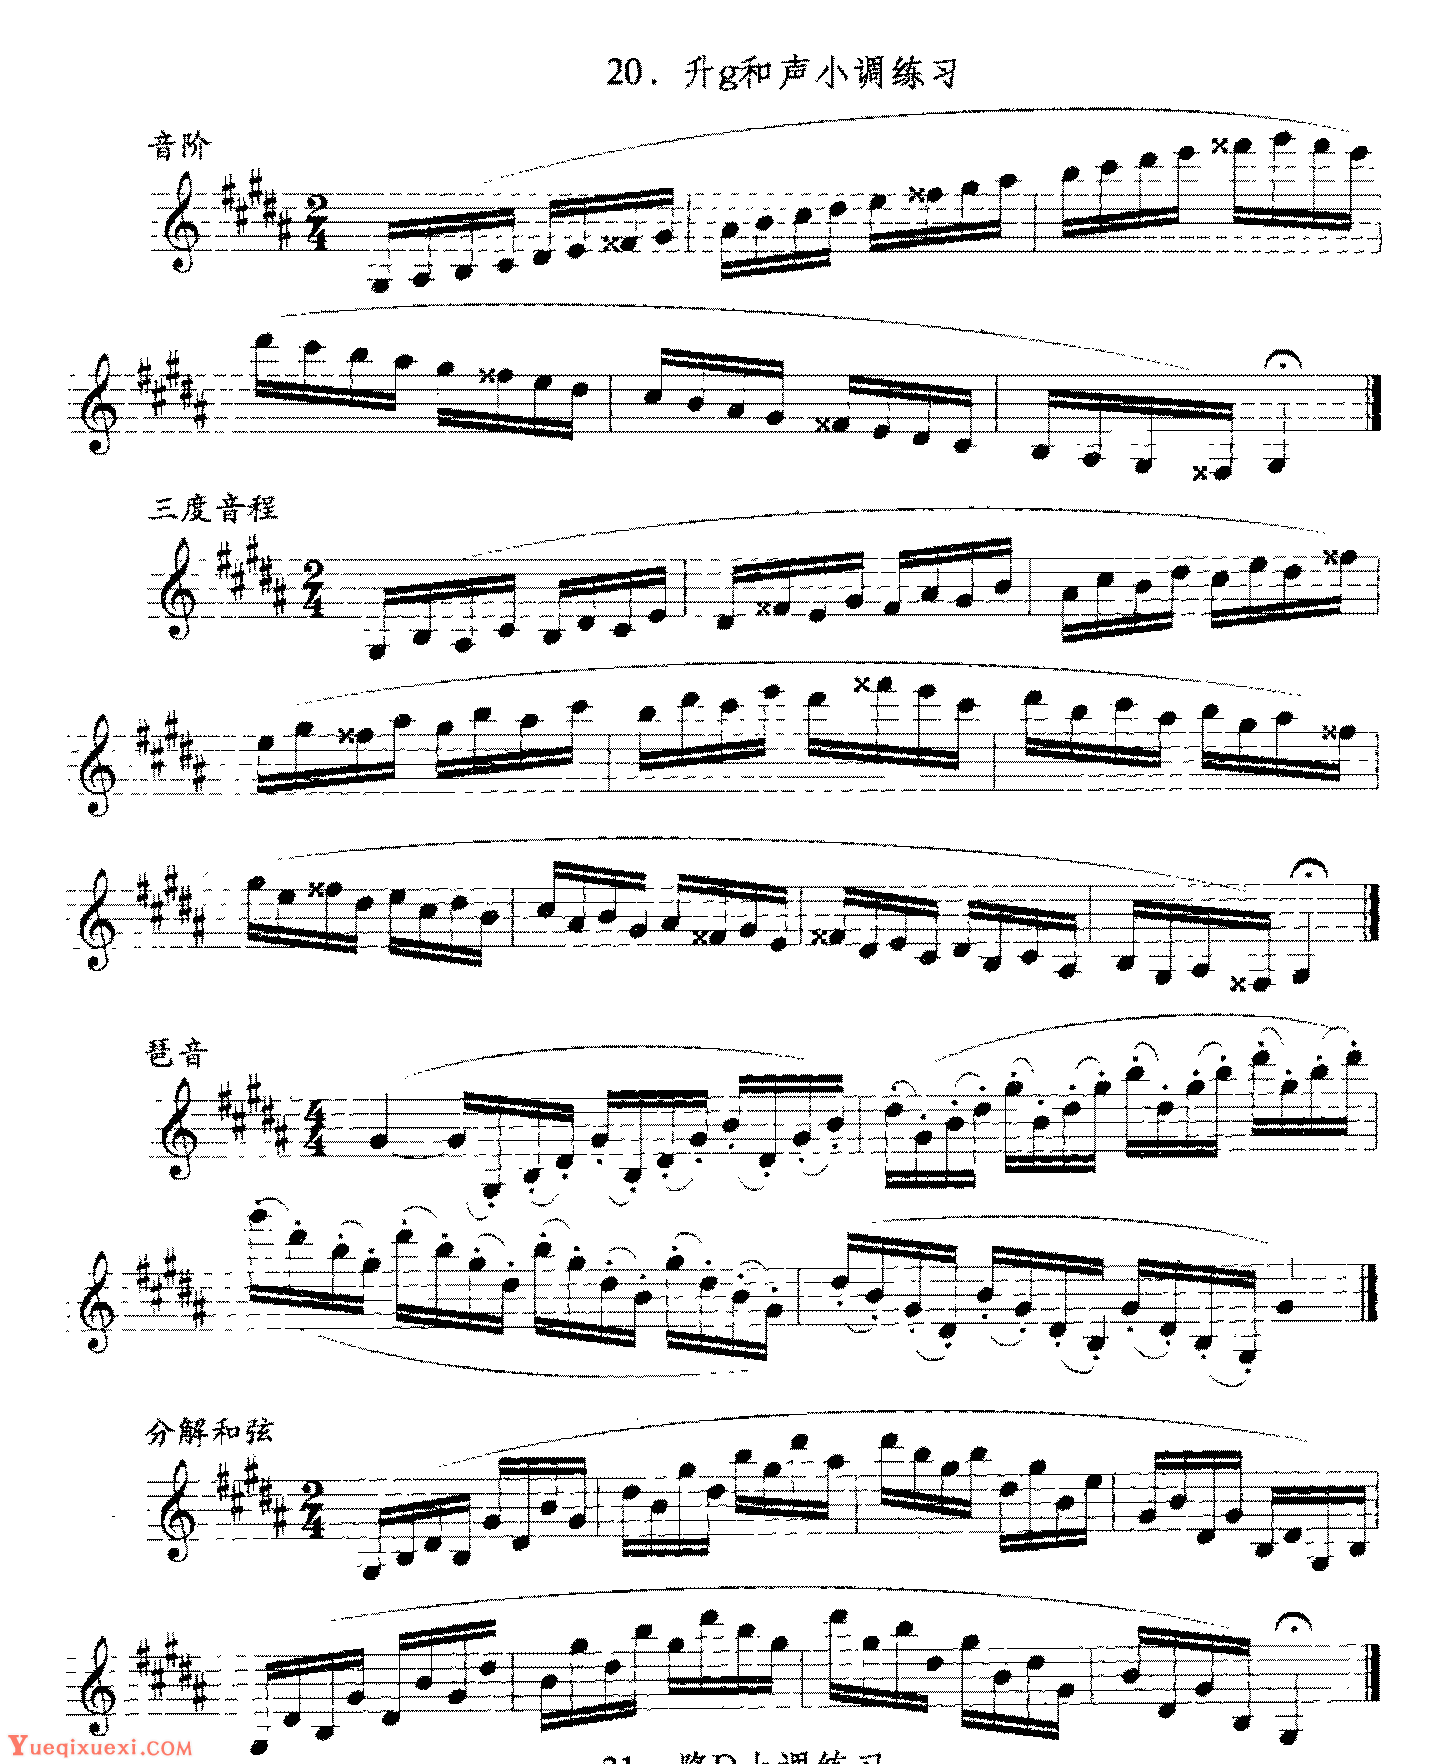 单簧管日常基础技术练习曲《升g和声小调练习》